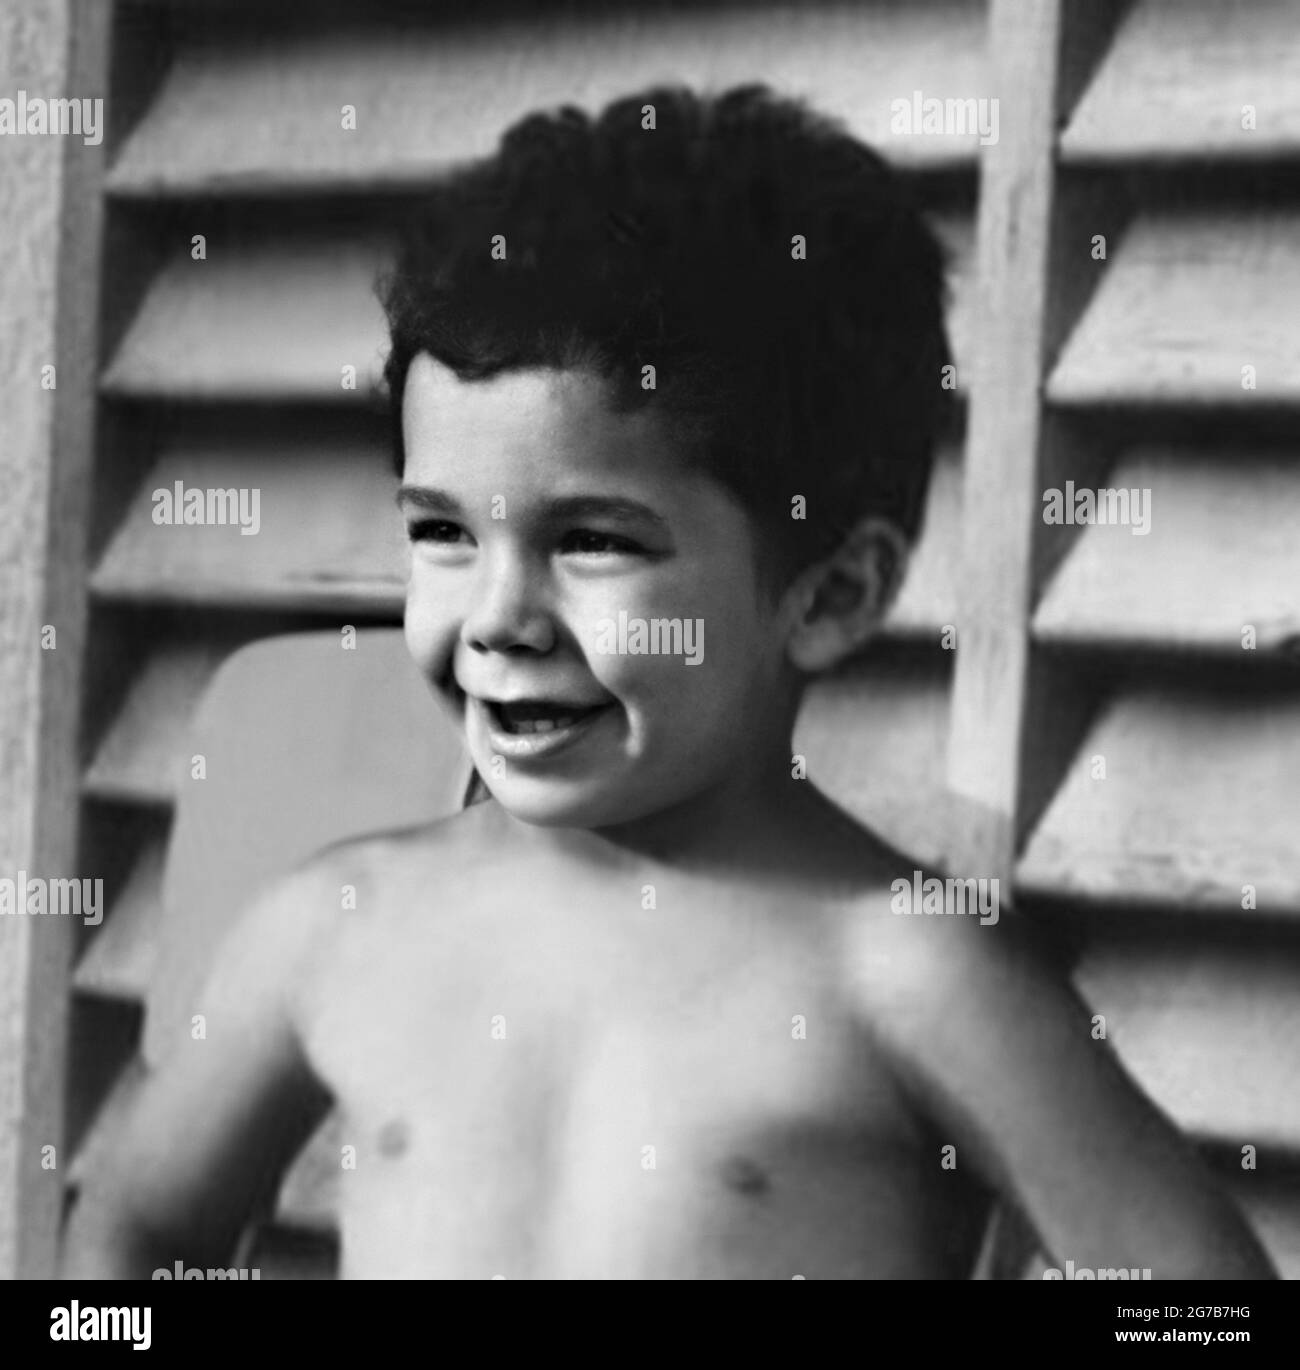 1968 CA, ITALIE : le célèbre footballeur italien GIANLUCA VIALLI ( né le 9 juillet 1964 ) quand était un jeune garçon de 4 ans . Photographe non dentifié. - SPORT- Gioco del CALCIO - FOOTBALL - CALCIATORE - sportivo - Italie équipe nationale de football - HISTOIRE - FOTO STORICHE - quand était un enfant - enfants - célébrités célébrité - celebità personaggi famosi da bambini - bambino - enfants - infanzia - enfance - sourire - sorriso -- - ARCHIVIO GBB Banque D'Images